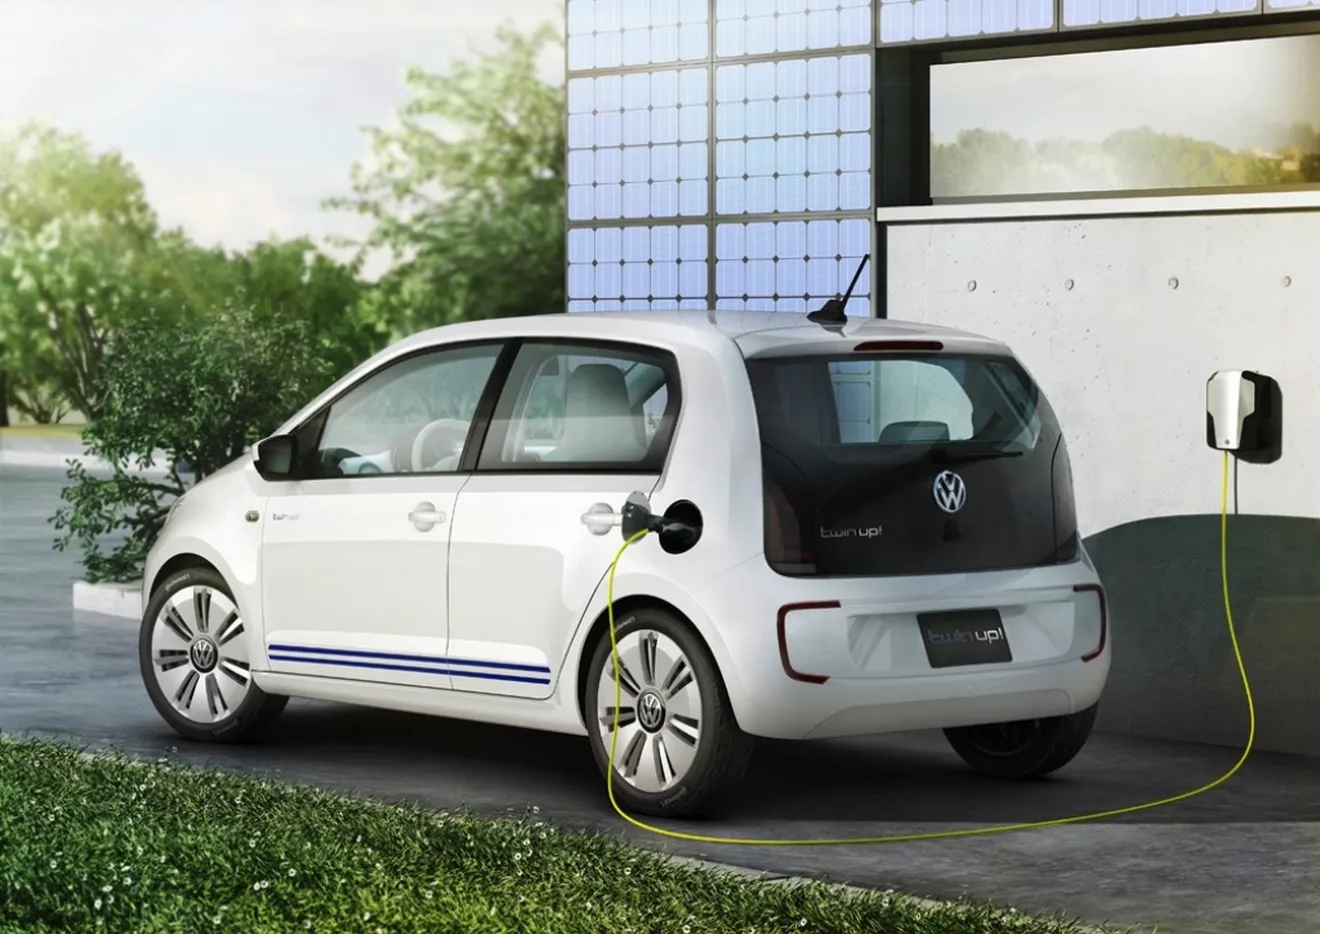 Volkswagen twin up!, solo 1,1 litros de gasóleo a los 100 kilómetros